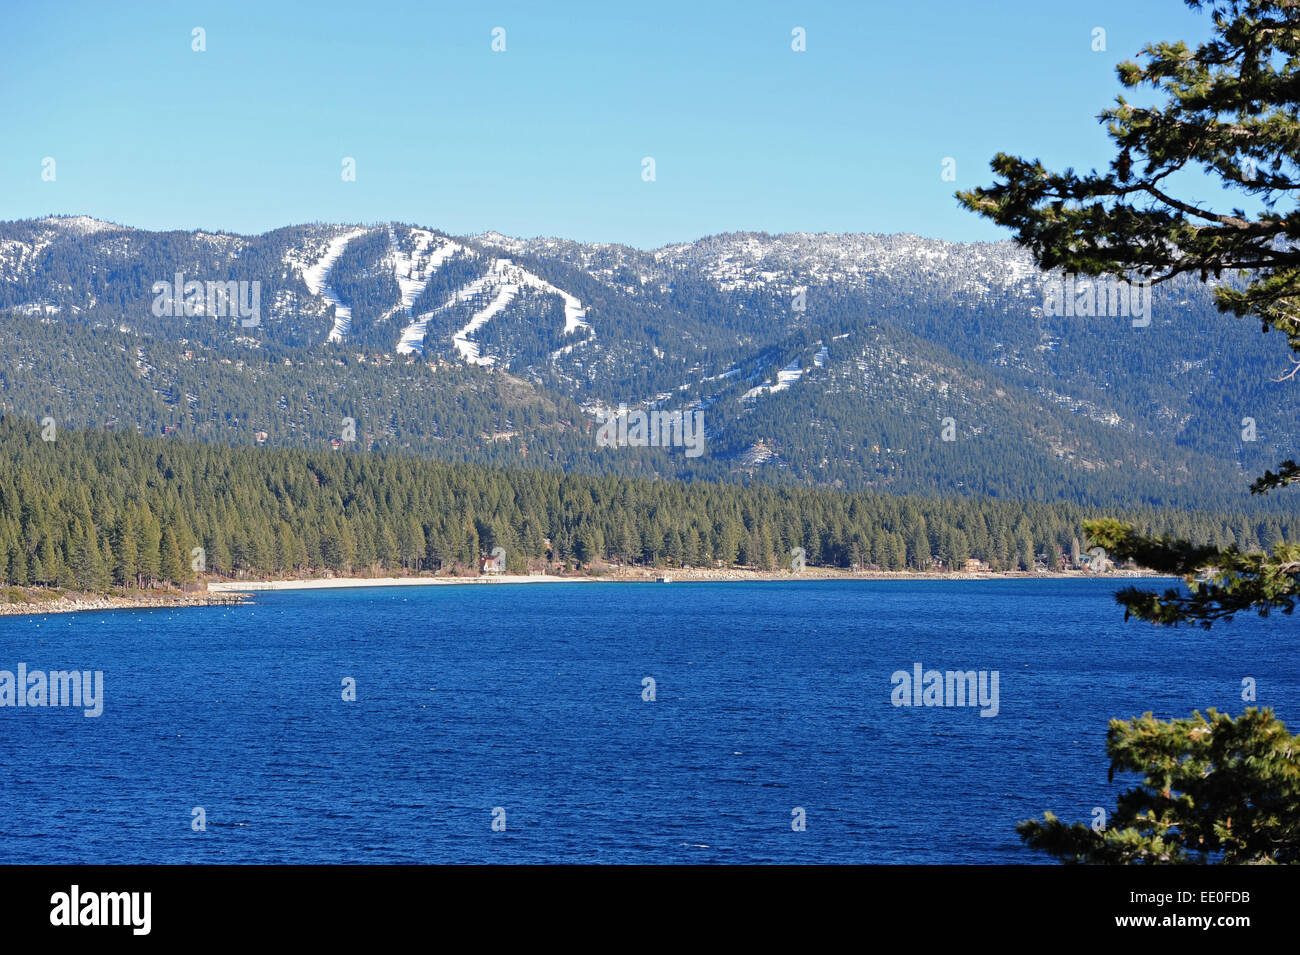 Estados Unidos Nevada NV Lake Tahoe Vista invernal de Incline Village y el Diamond Peak Ski Resort en las montañas de la Sierra Madre Foto de stock